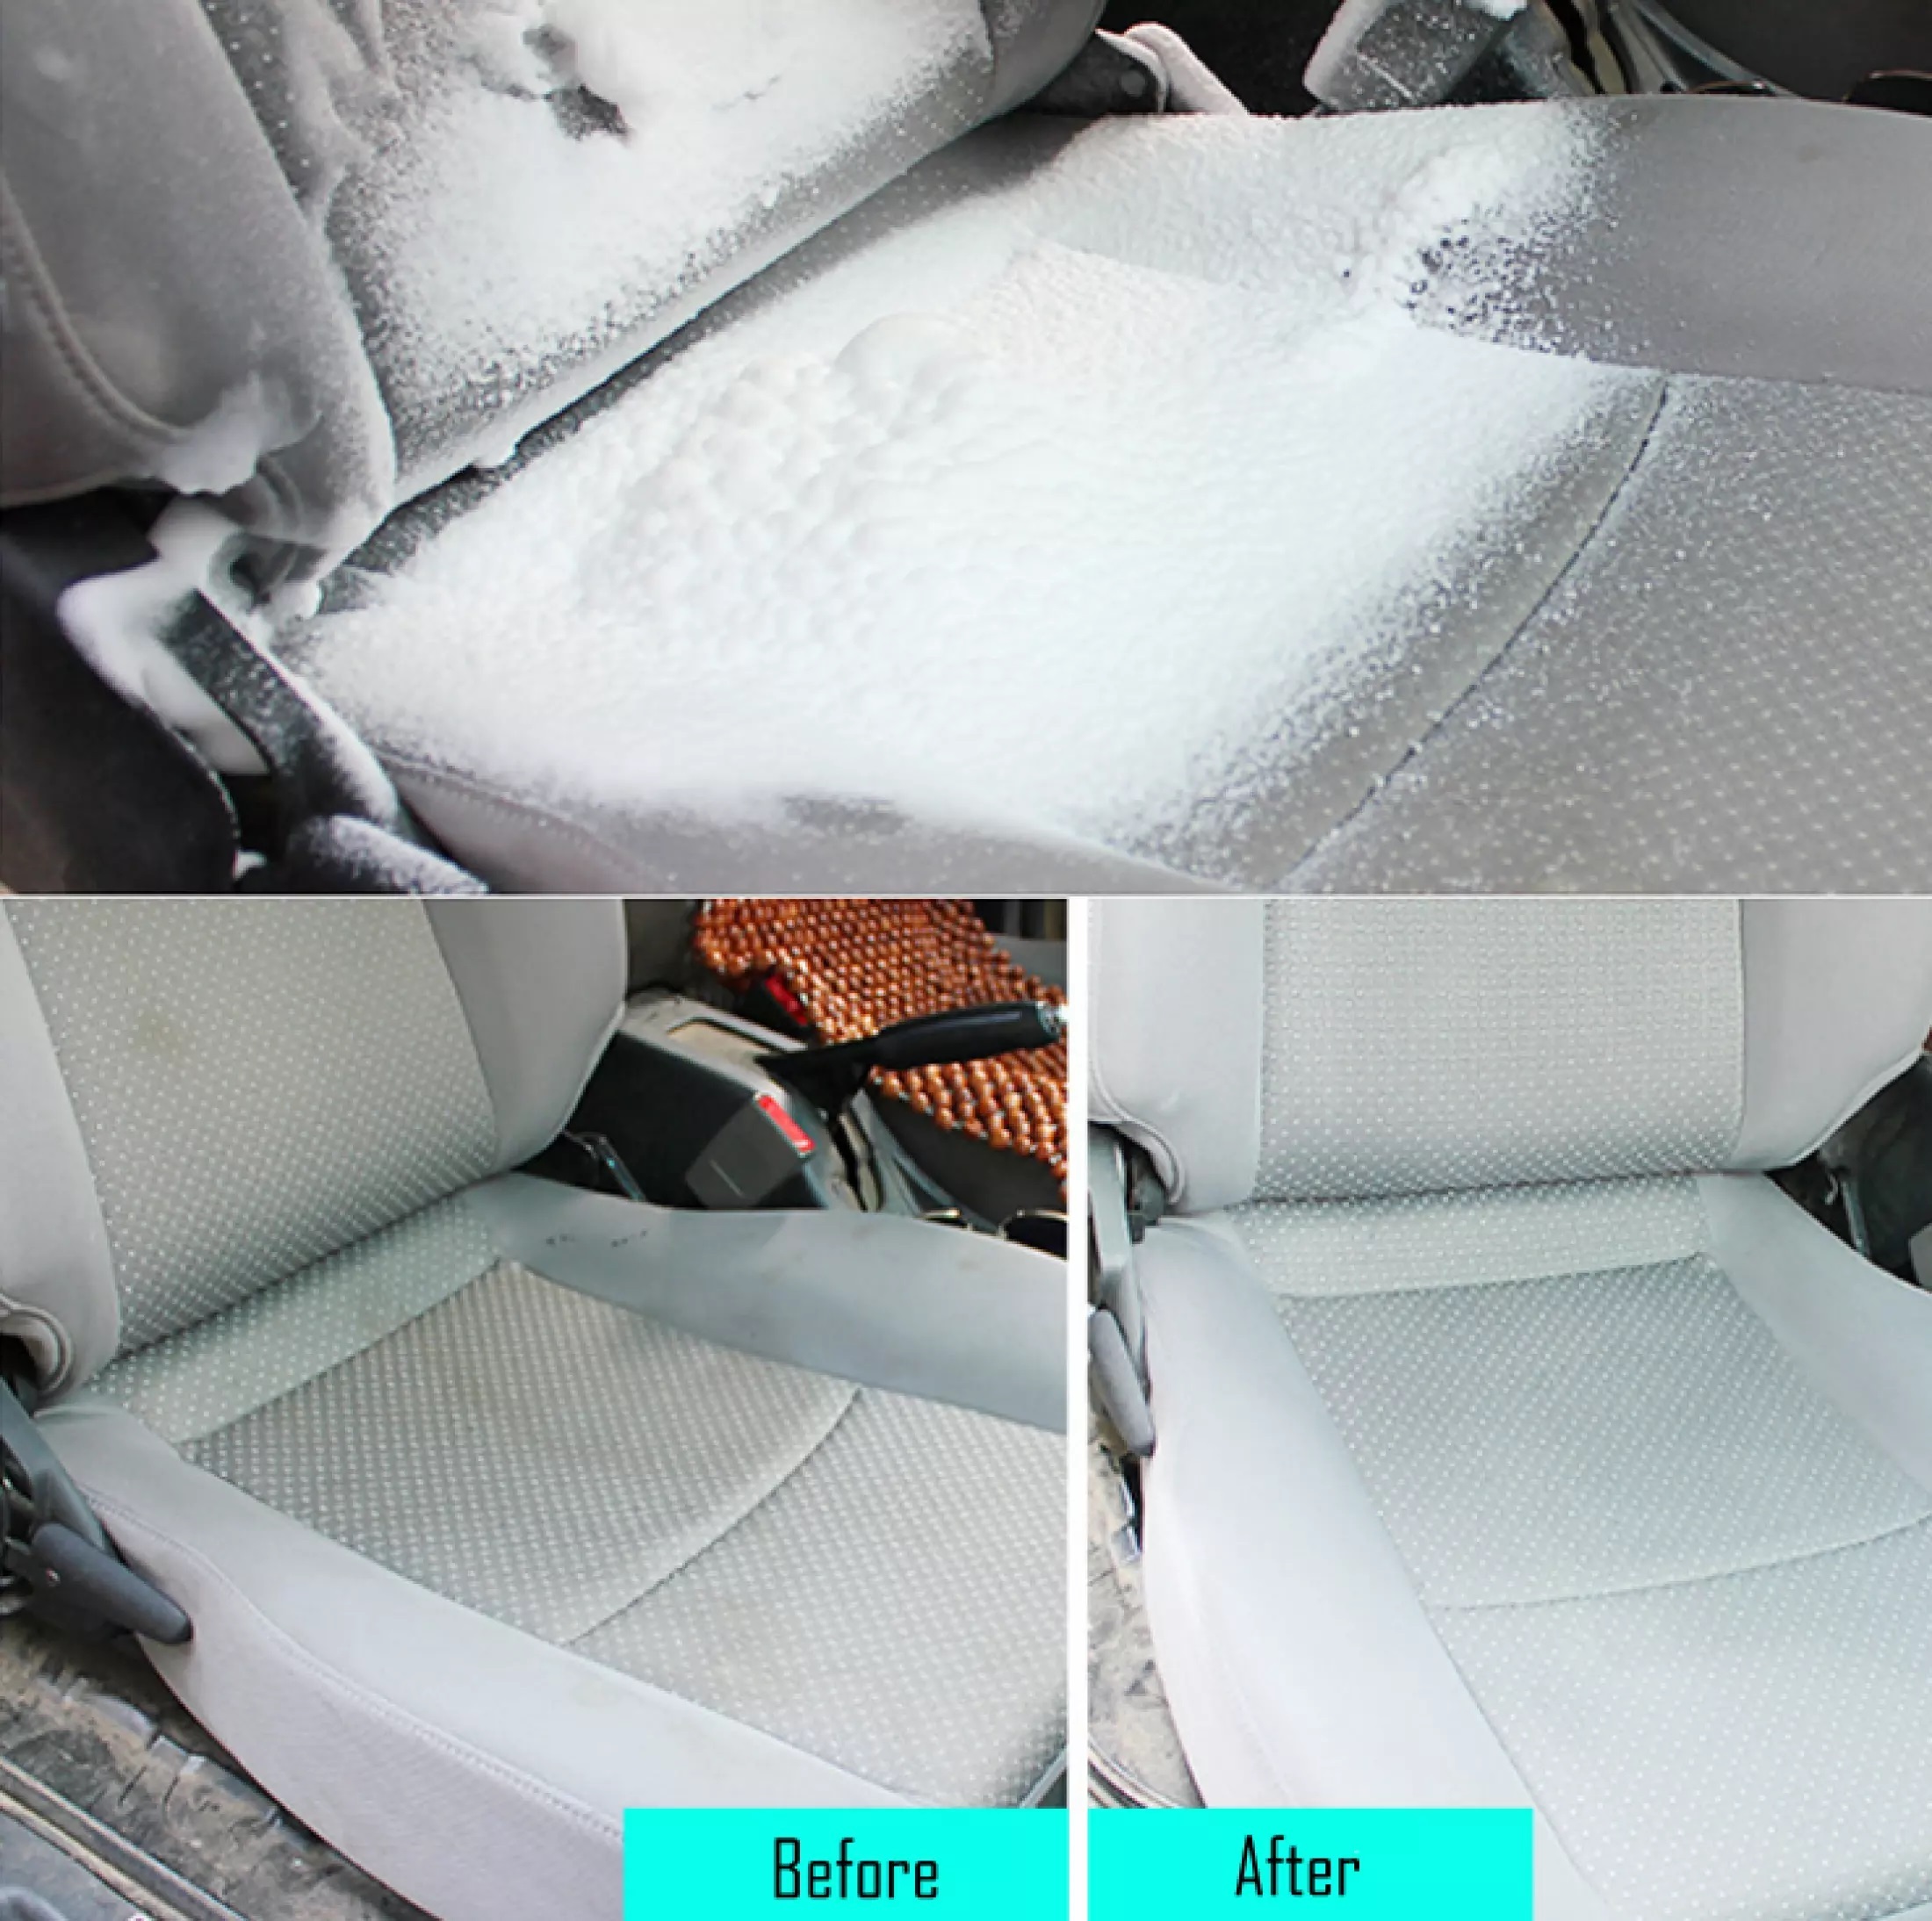 Blue Car Foam Cleaner Multipurpose Foam Cleaner